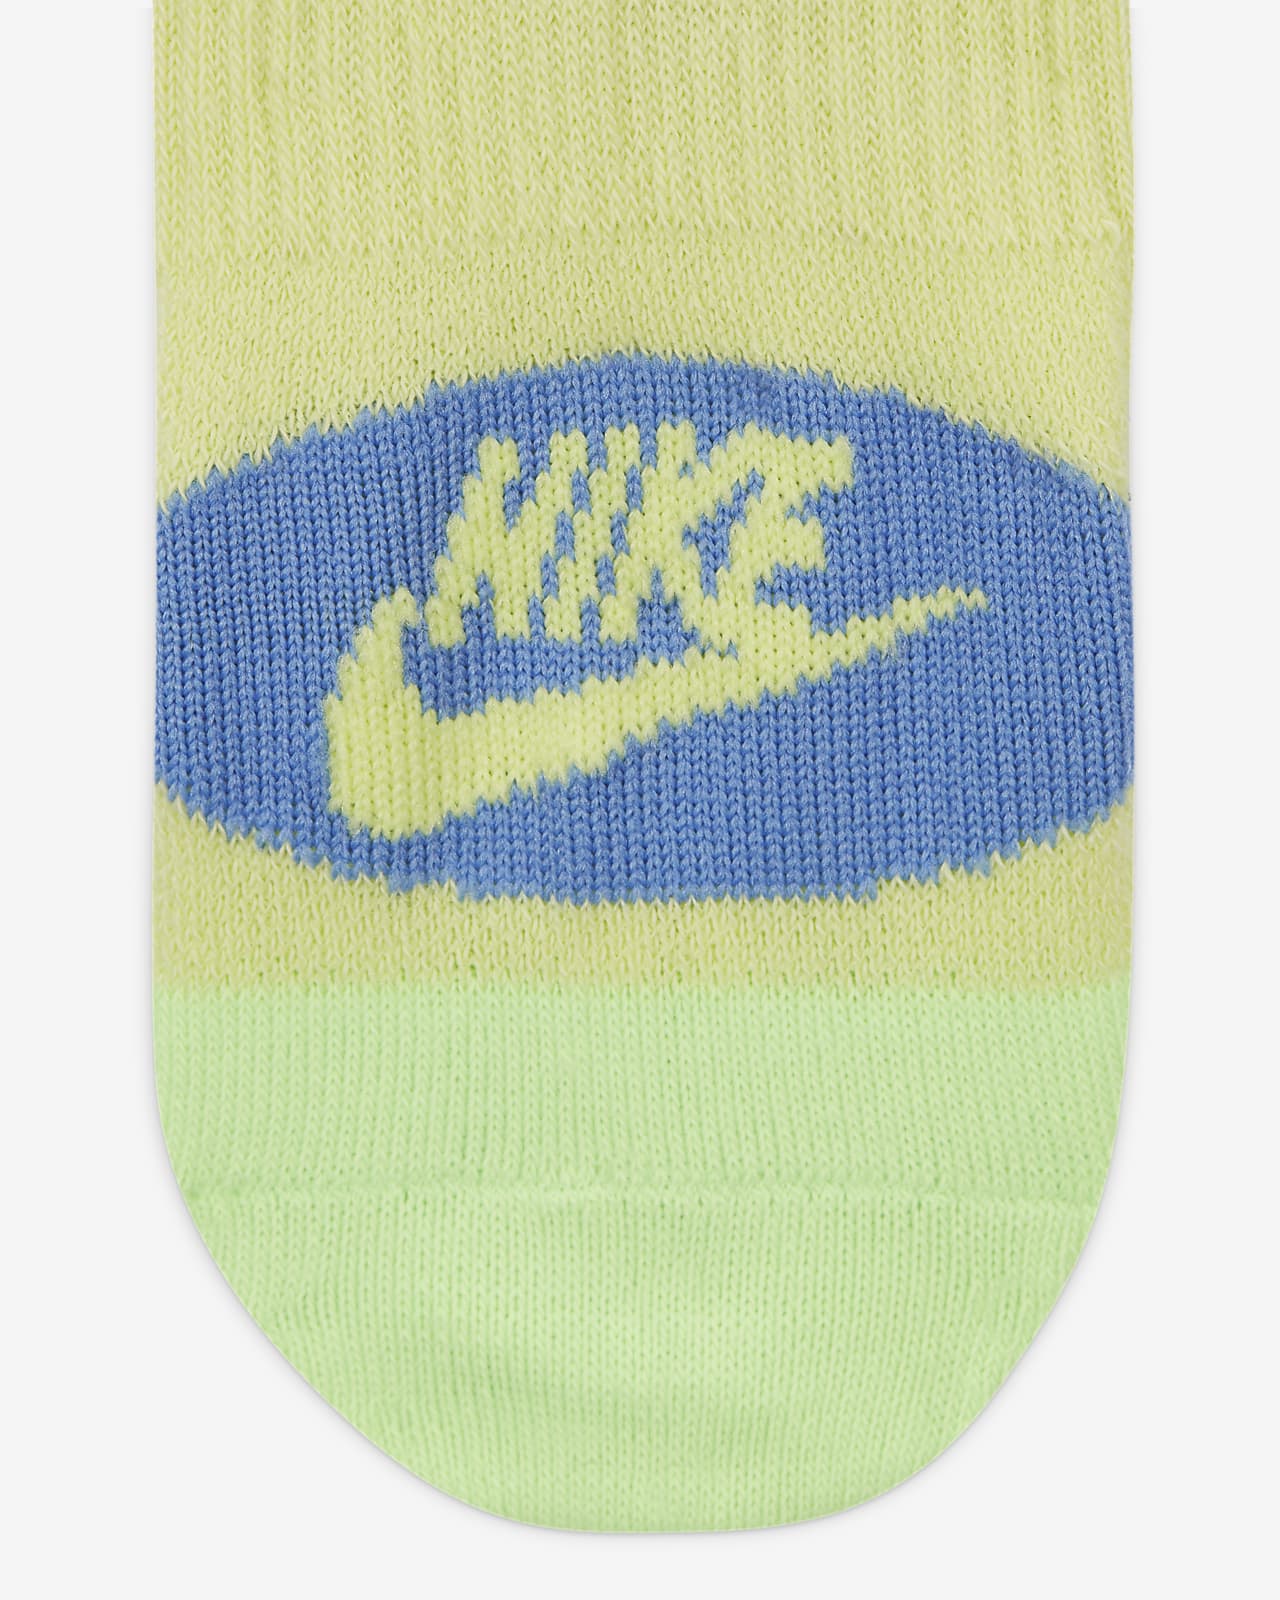 Un par de calcetines deportivos de color amarillo brillante